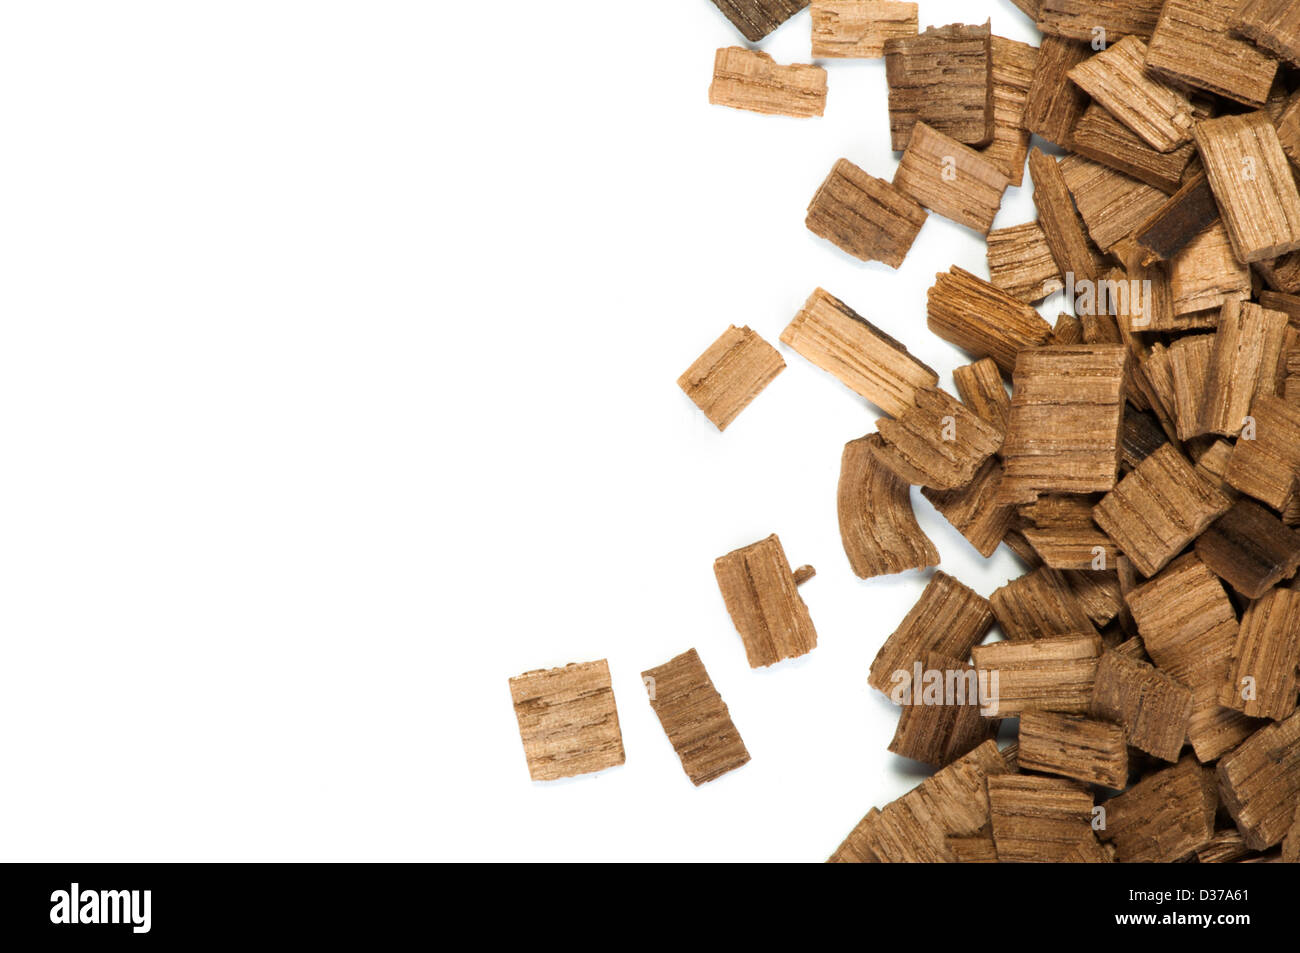 Pezzi di legno di quercia per industria vinicola. White isolato Foto Stock